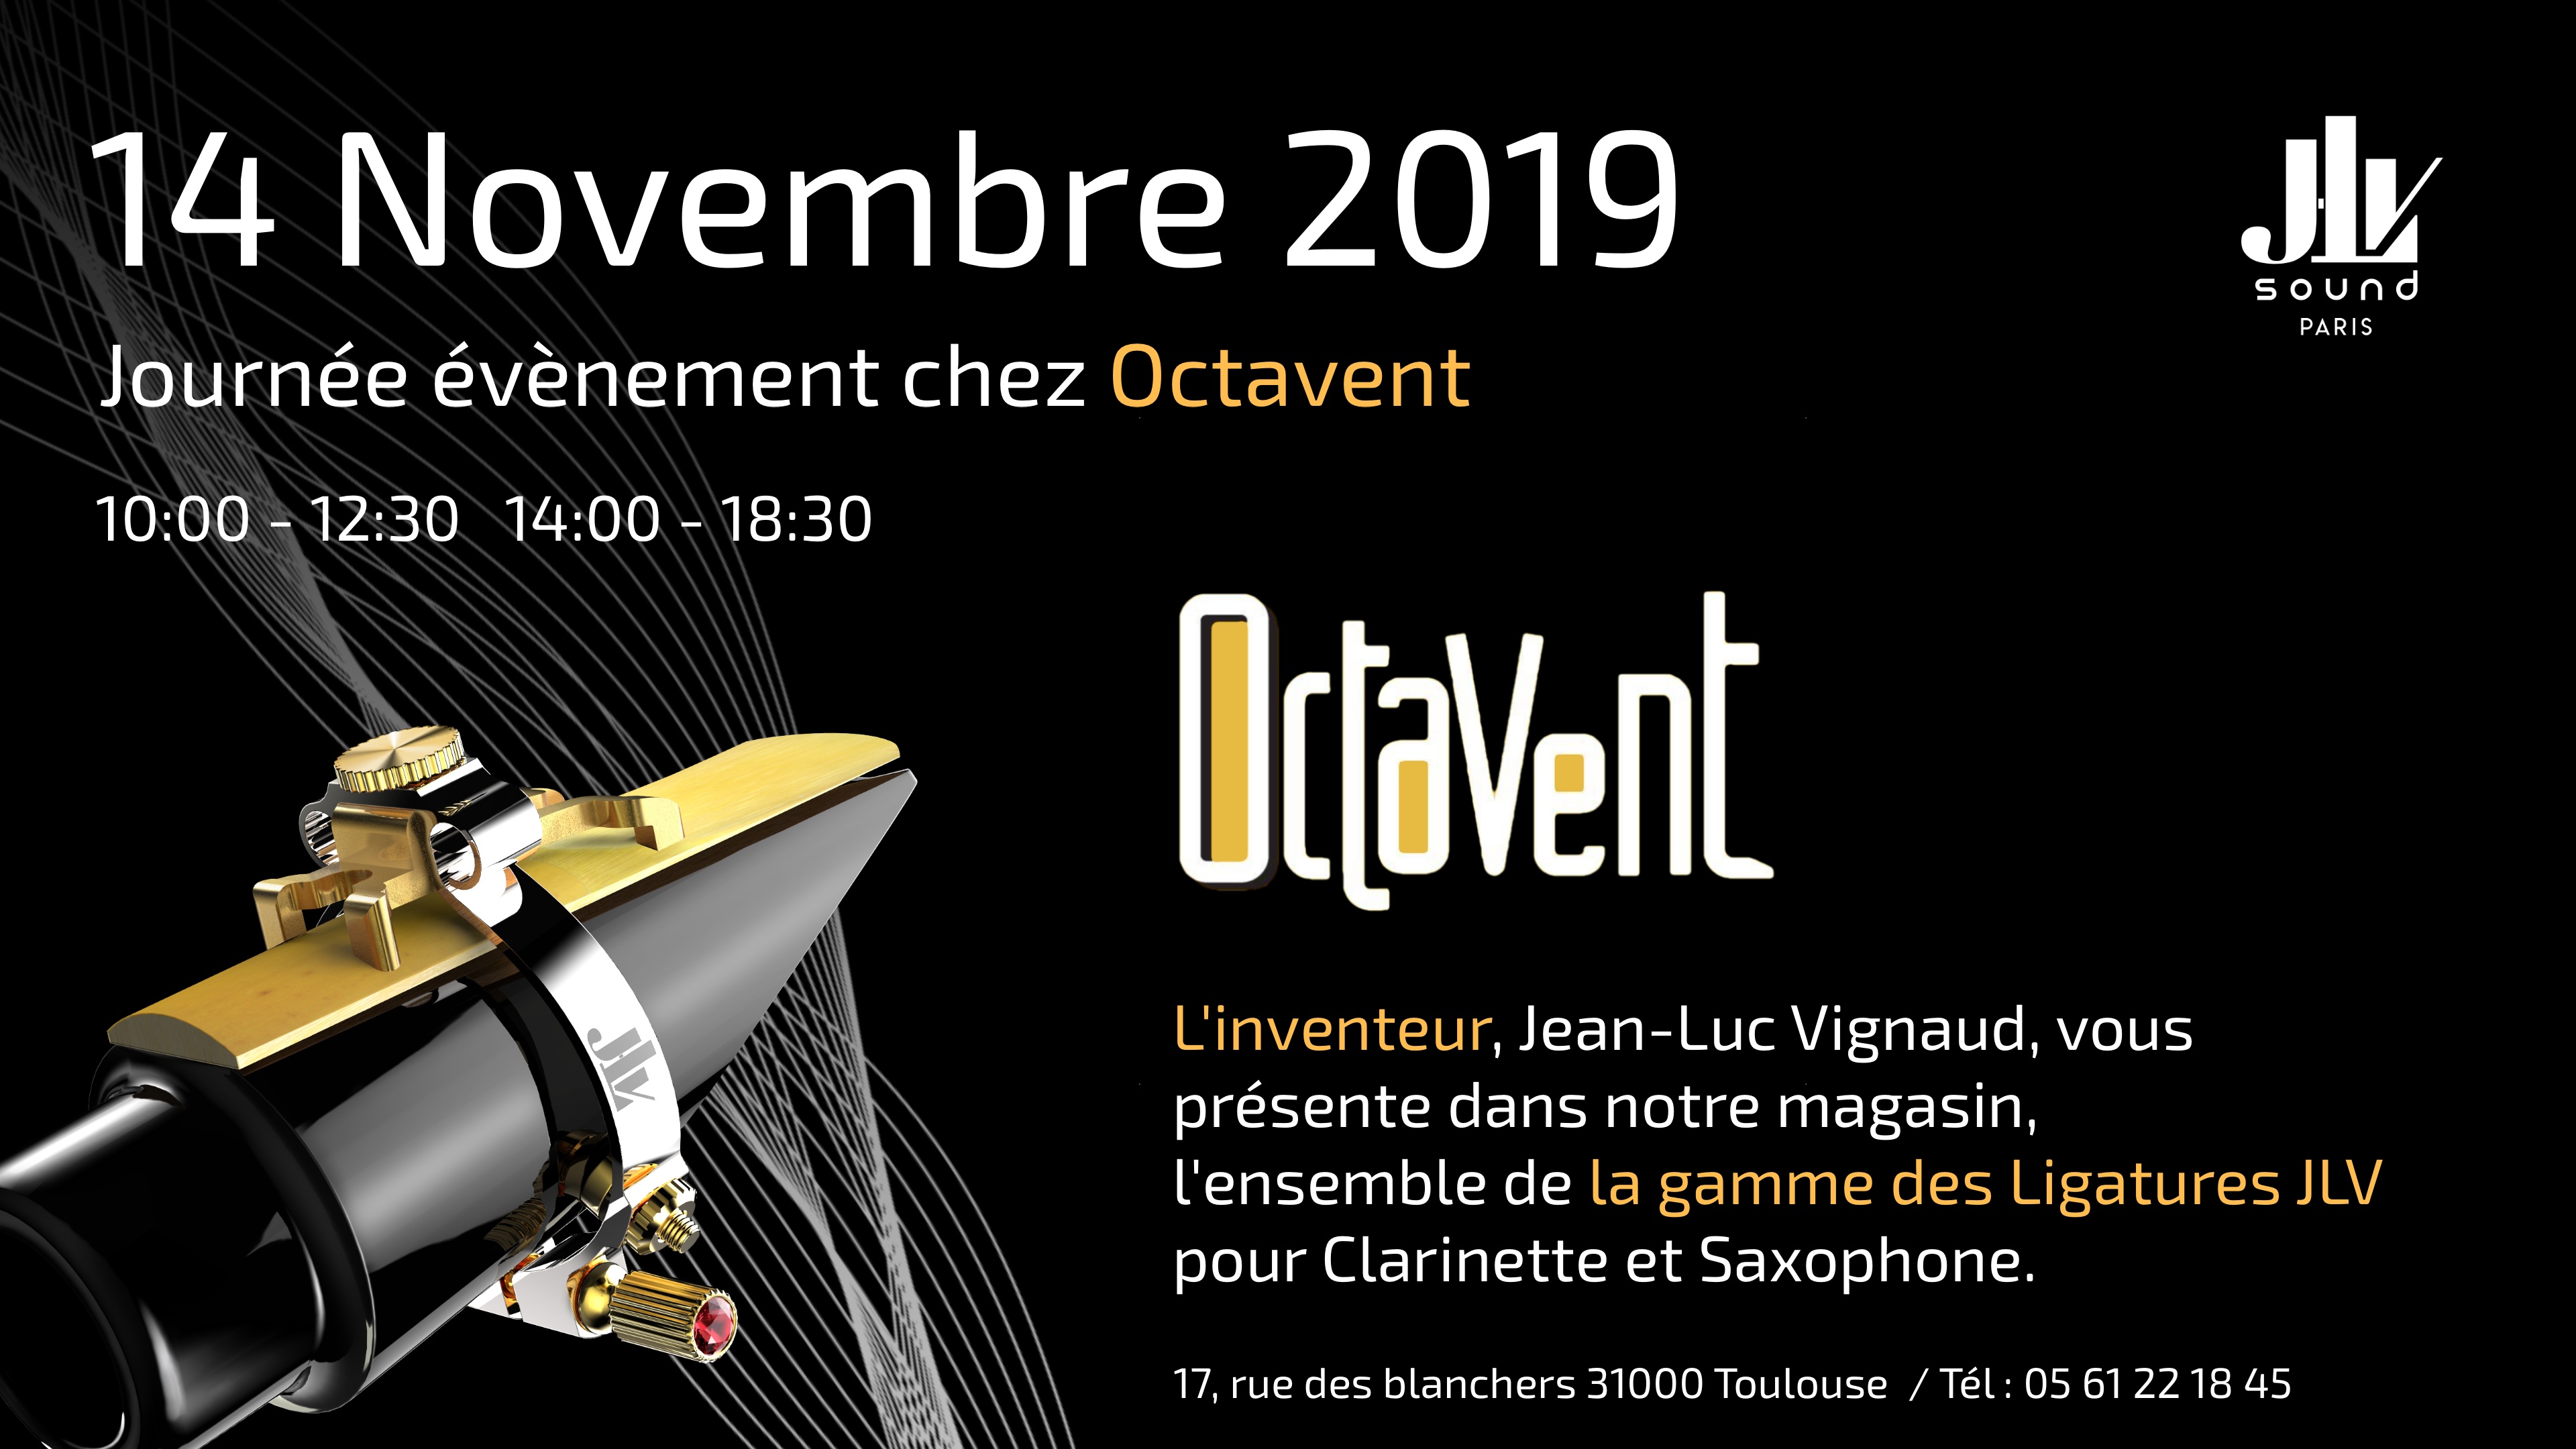 Octavent 14 novembre 2019 présentation de la gamme des Ligatures JLV 